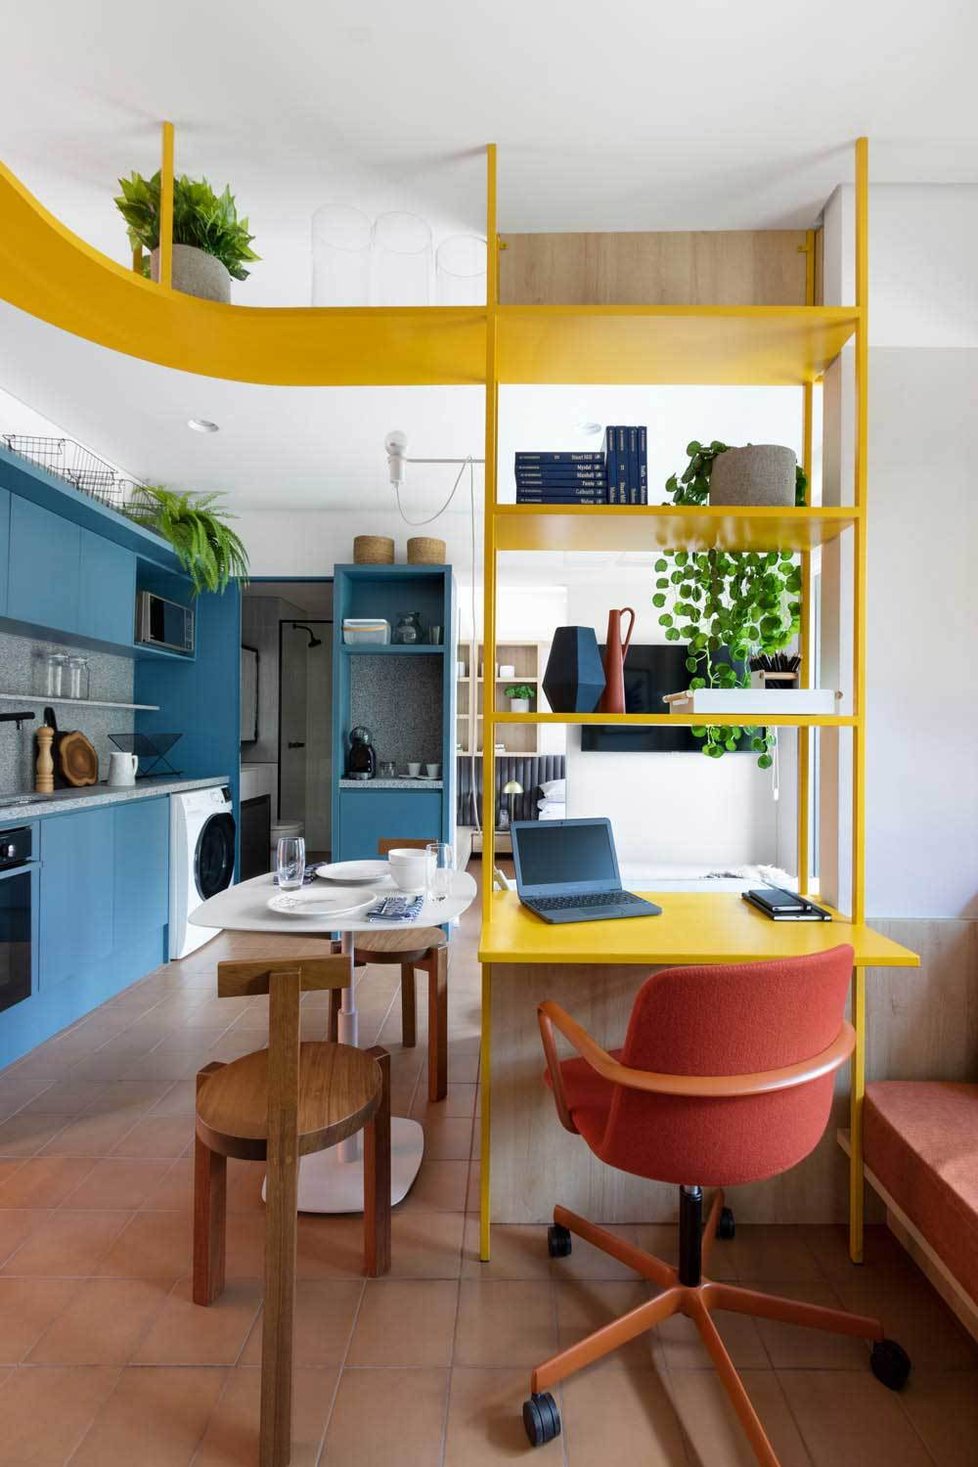 Malý byt oživily zářivé barvy a originální řešení prostoru.